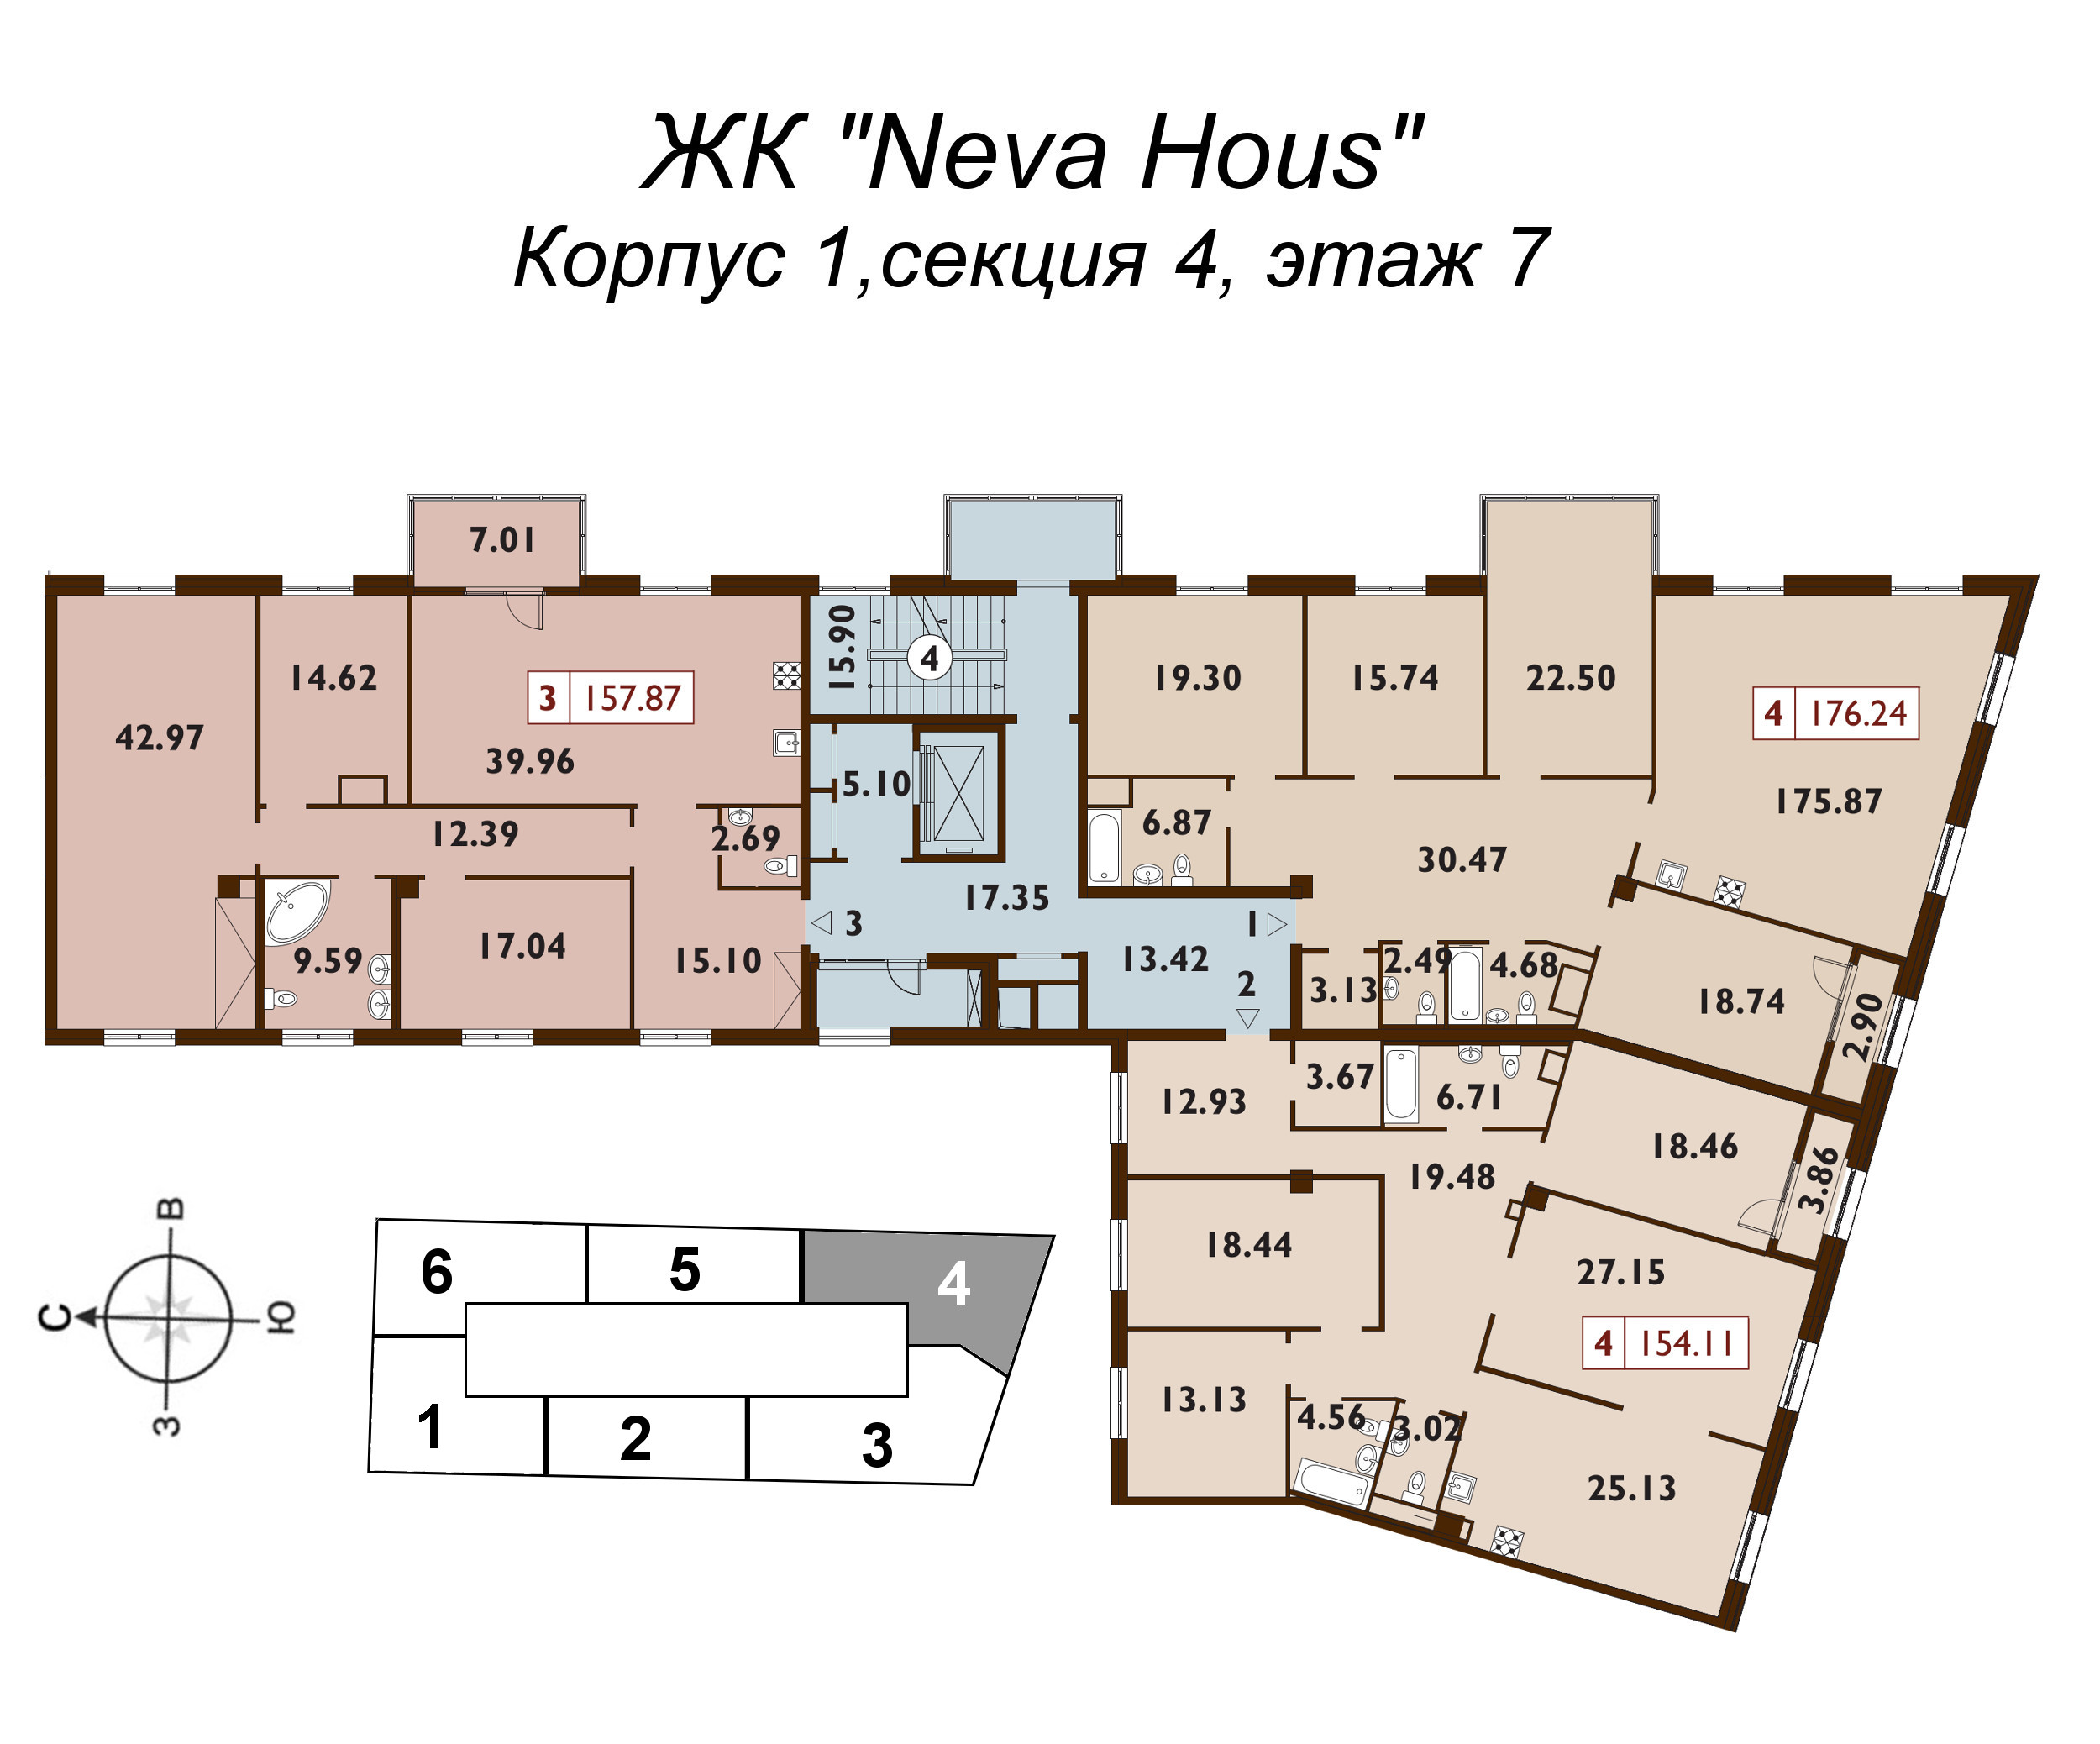 5-комнатная (Евро) квартира, 154.6 м² в ЖК "Neva Haus" - планировка этажа